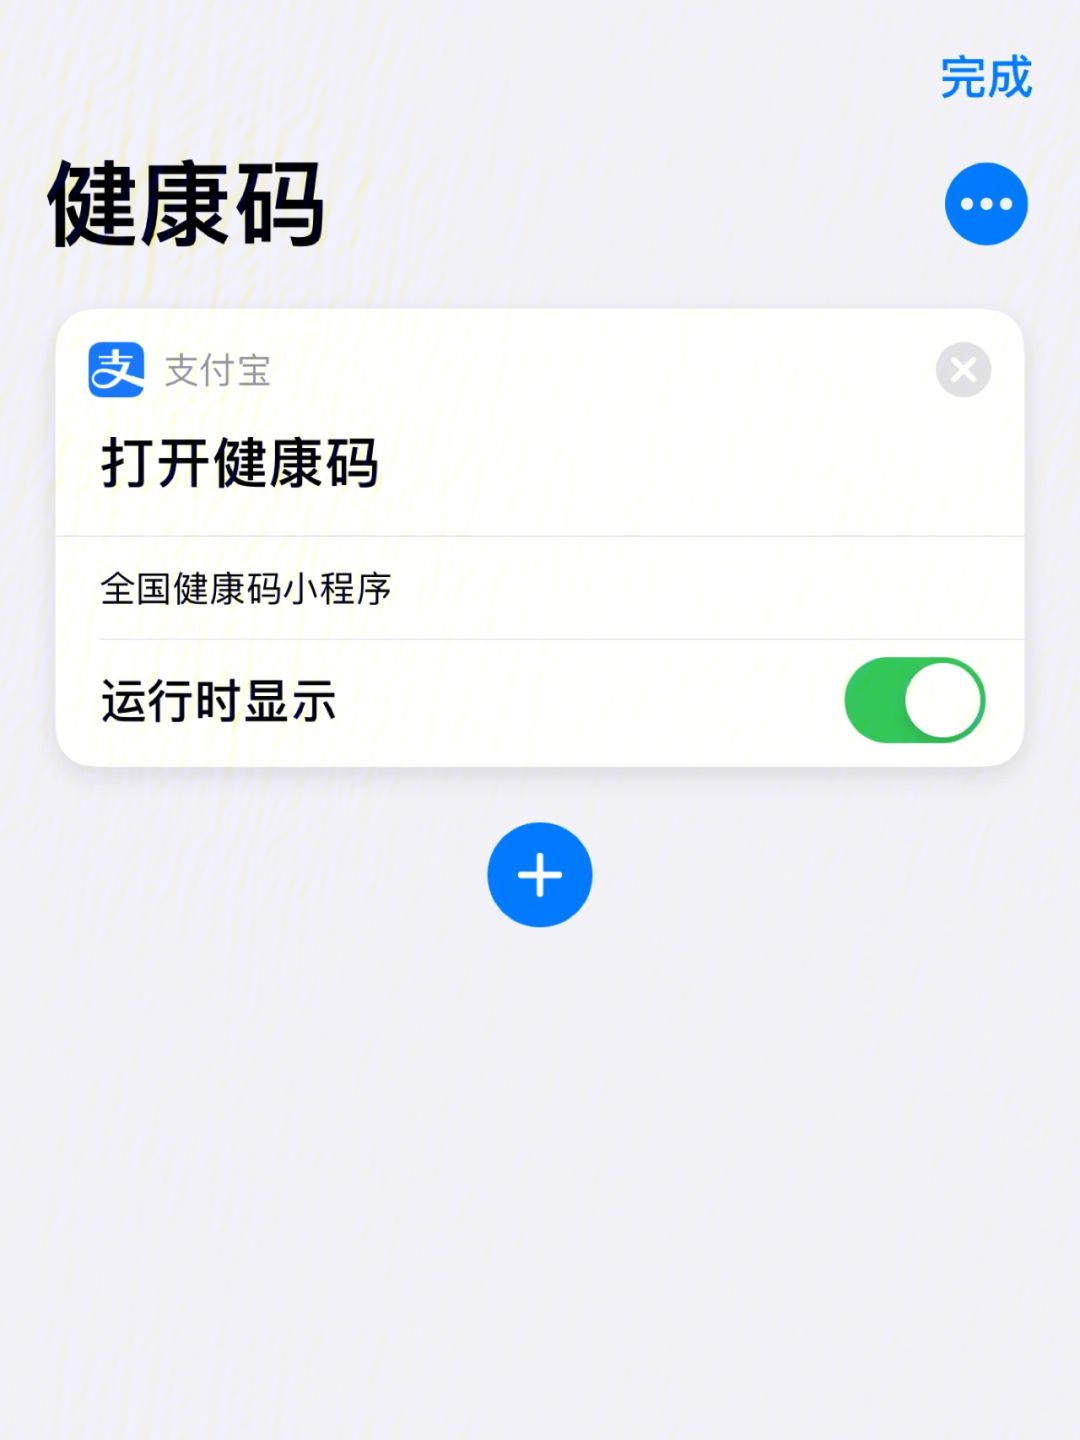 北京健康宝苹果版如何下载(下载北京健康宝并安装苹果)